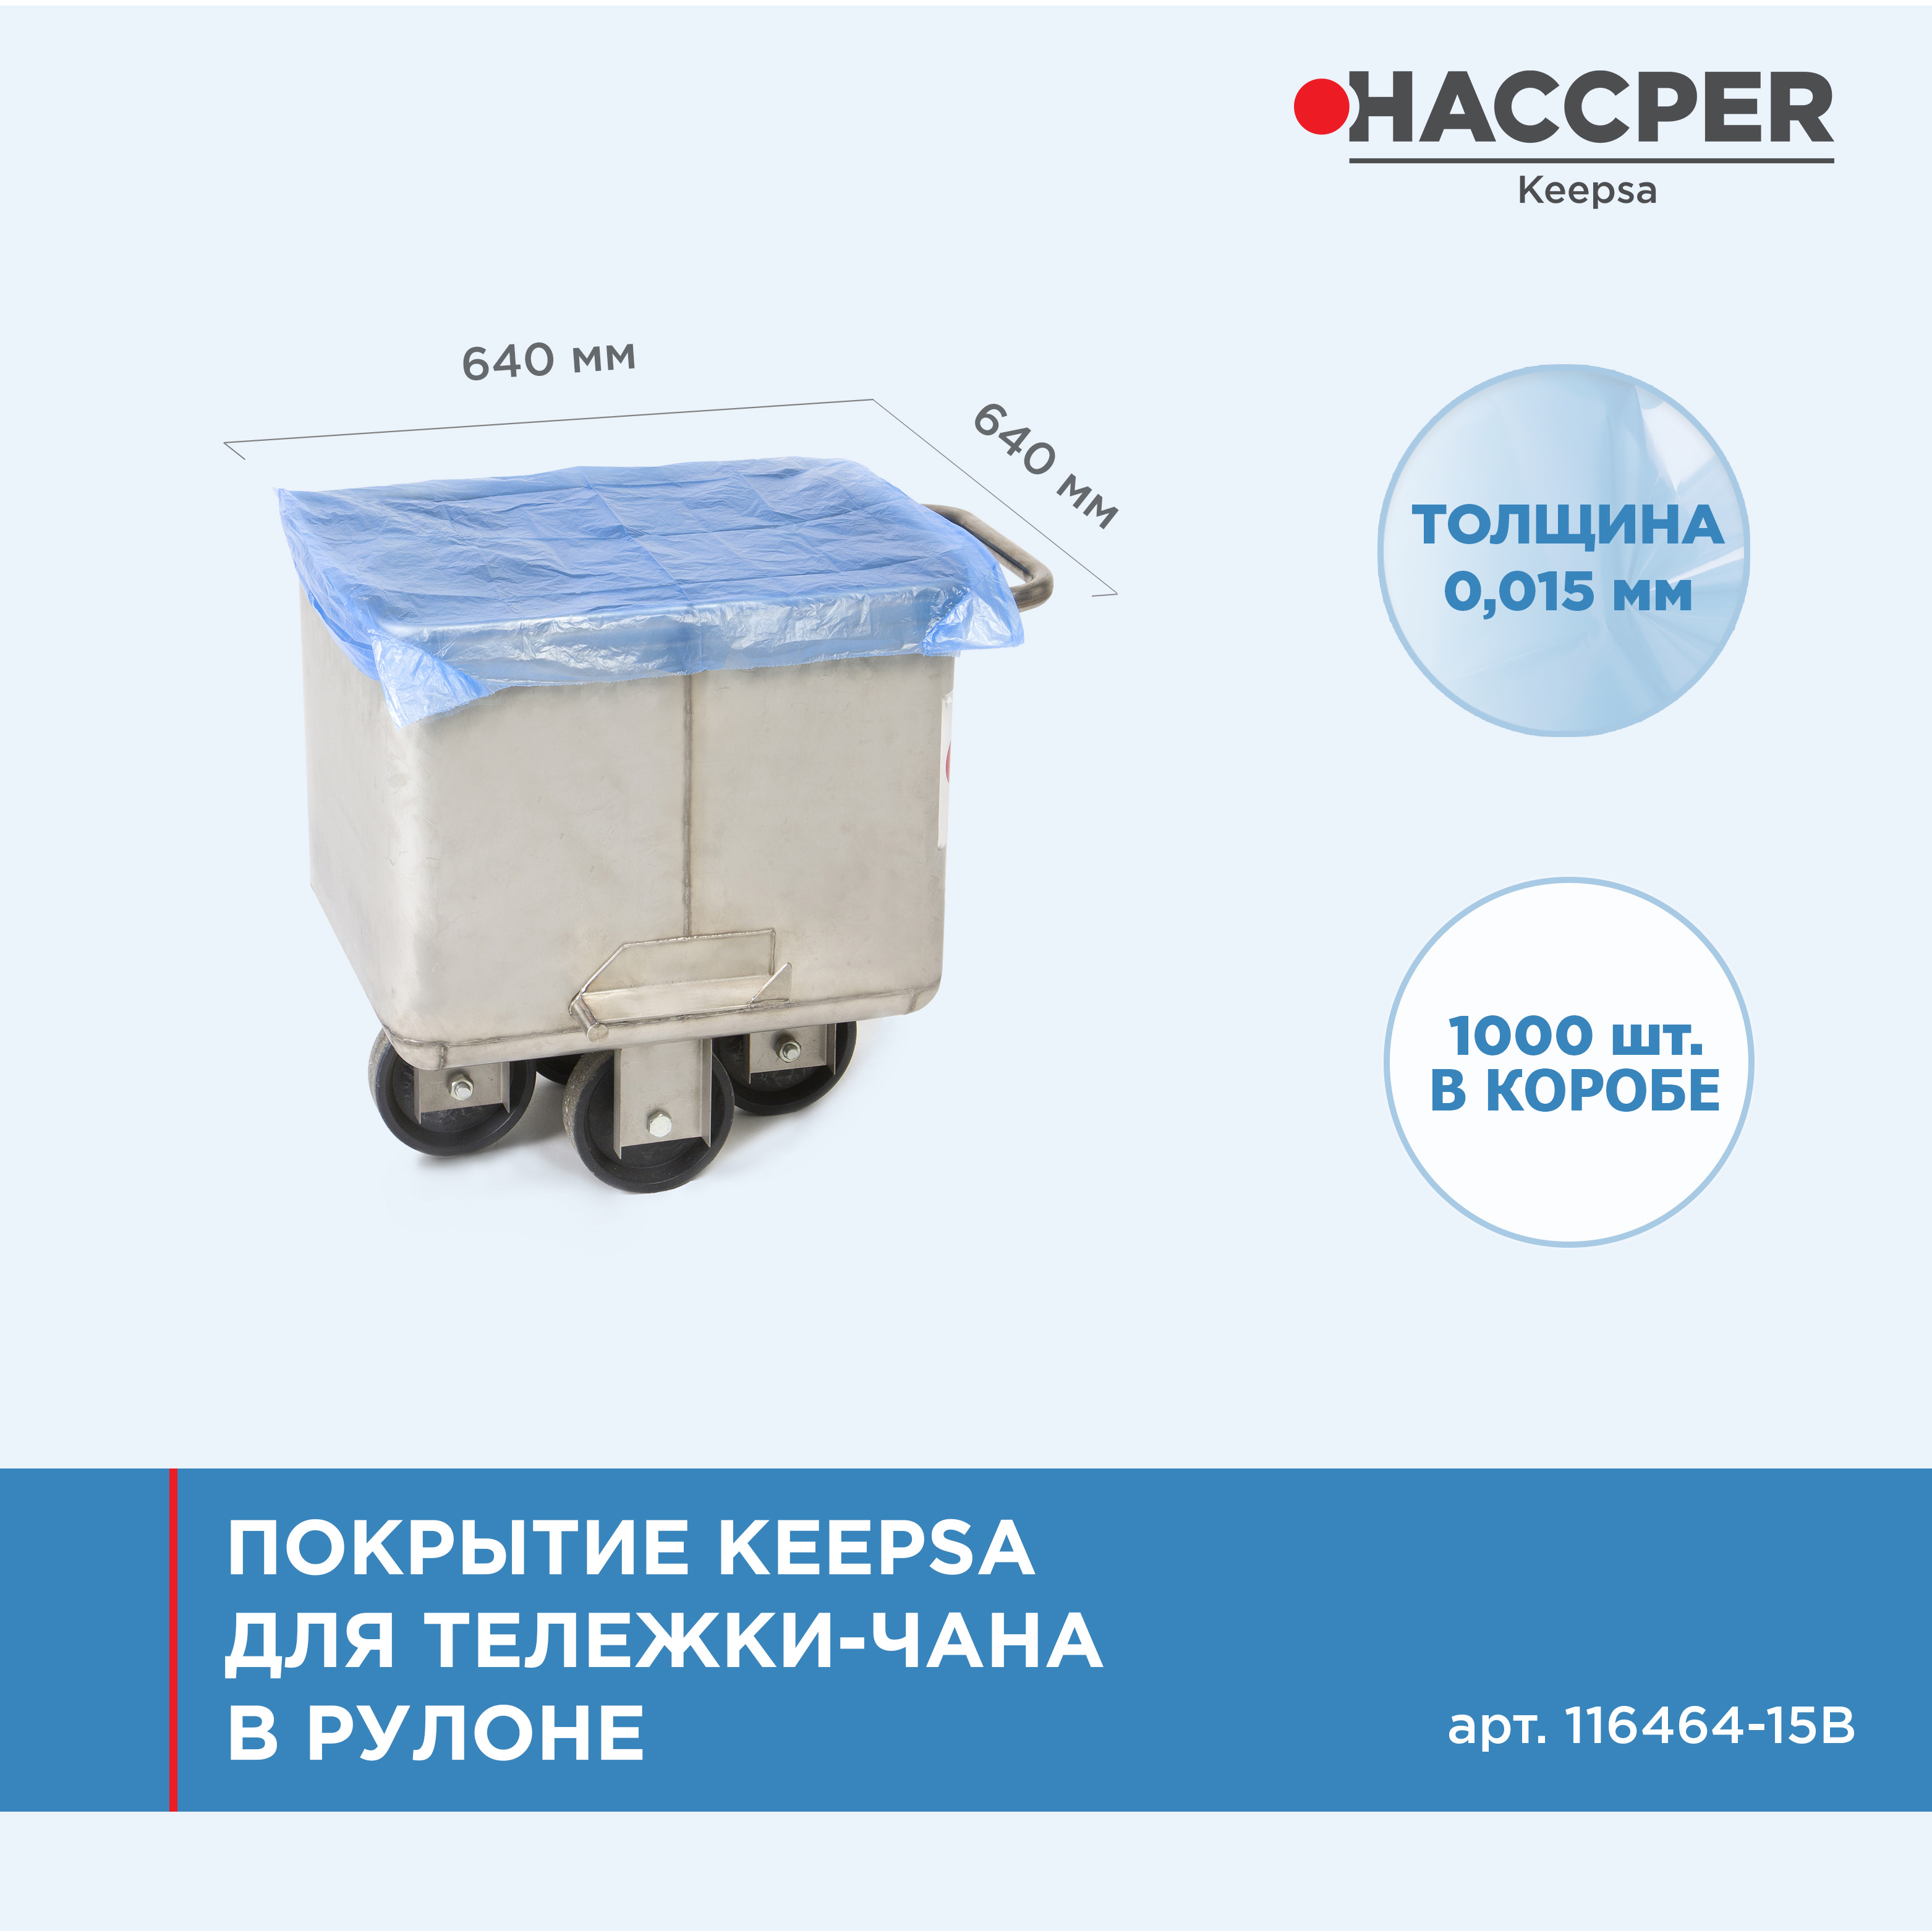 Покрытие HACCPER Keepsa для тележки-чана на втулке 640*640 мм